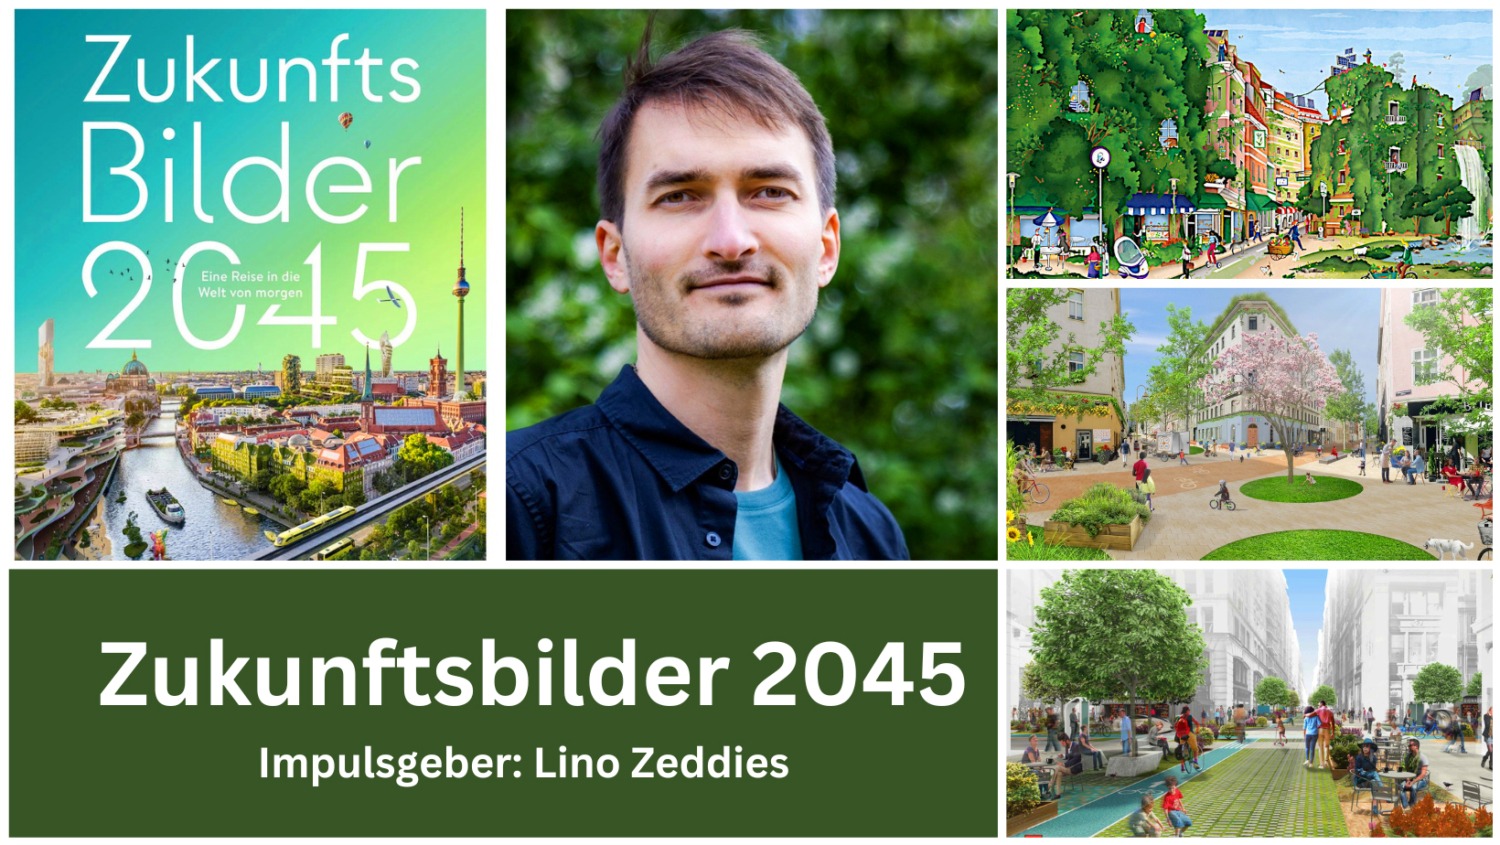 ZukunftMacher-VIPs-Zukunftsbilder-2045-scaled ZukunftsMacher VIPs Meeting: Zukunftsbilder 2045